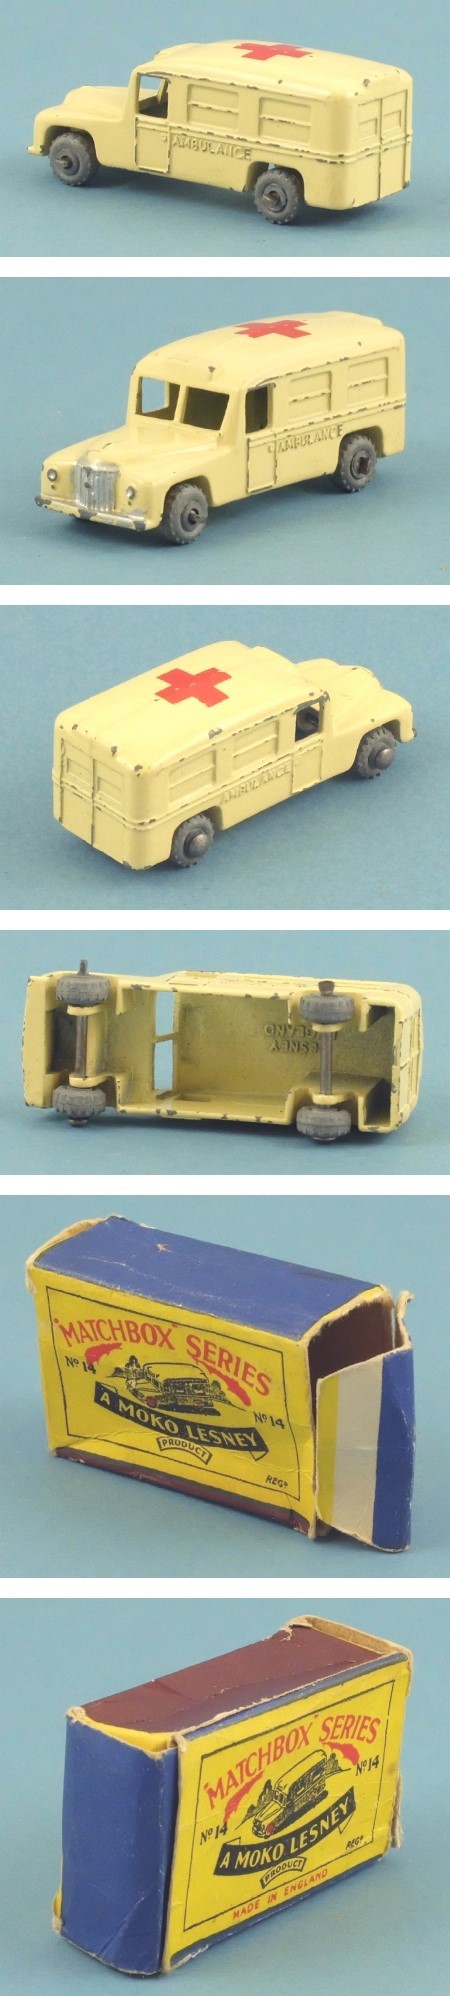 14a Daimler Ambulance